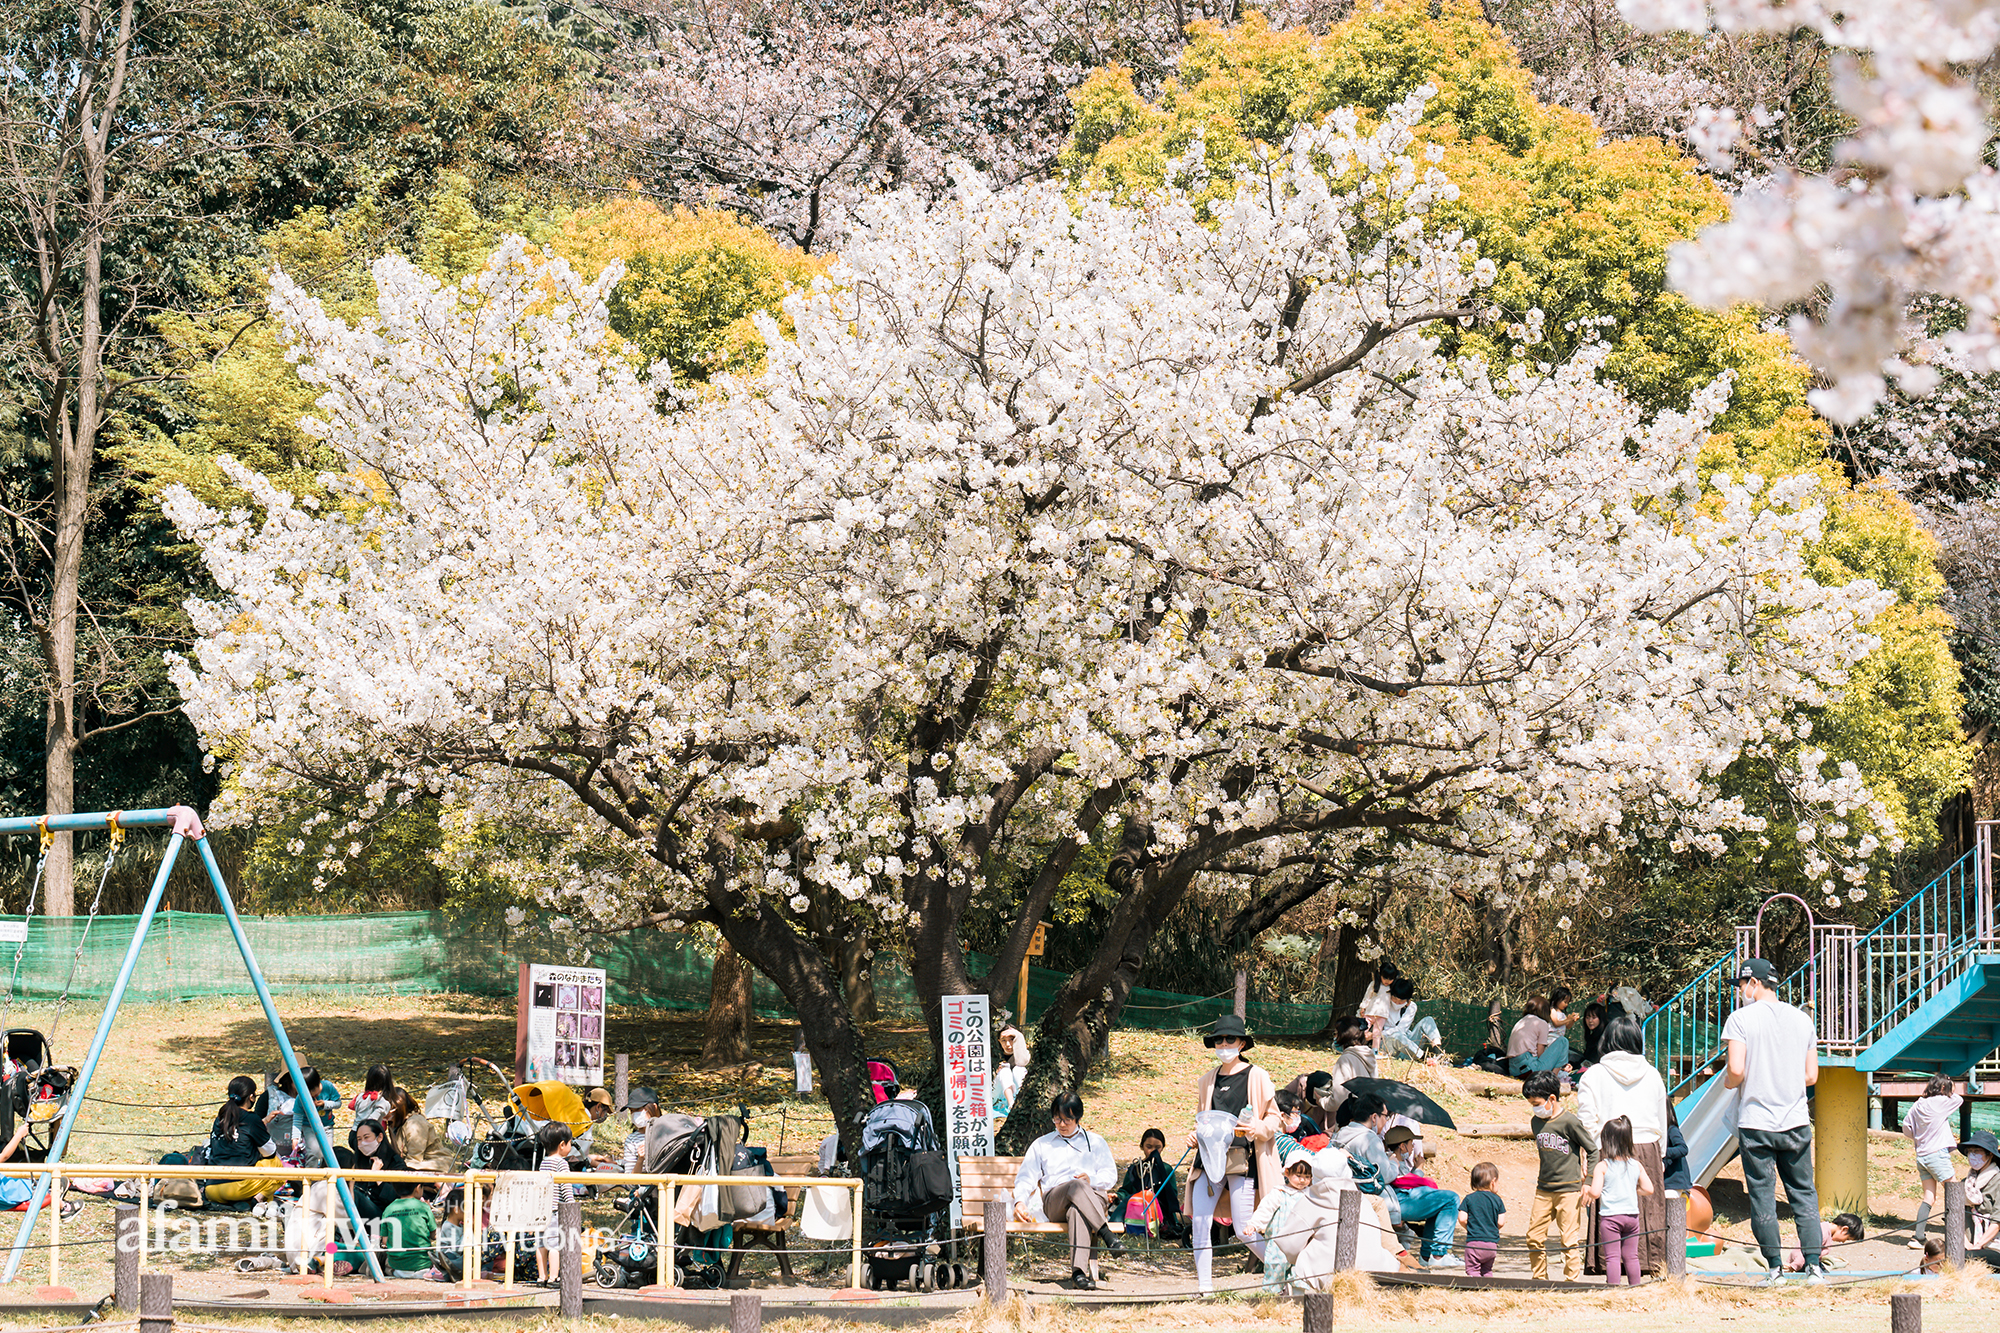 Siêu ngây ngất cảnh toàn thủ đô Tokyo bao trùm dưới hàng trăm nghìn cây hoa anh đào bởi hiện tượng nở sớm nhất trong 1.200 năm qua ống kính của anh chàng người Việt - Ảnh 1.